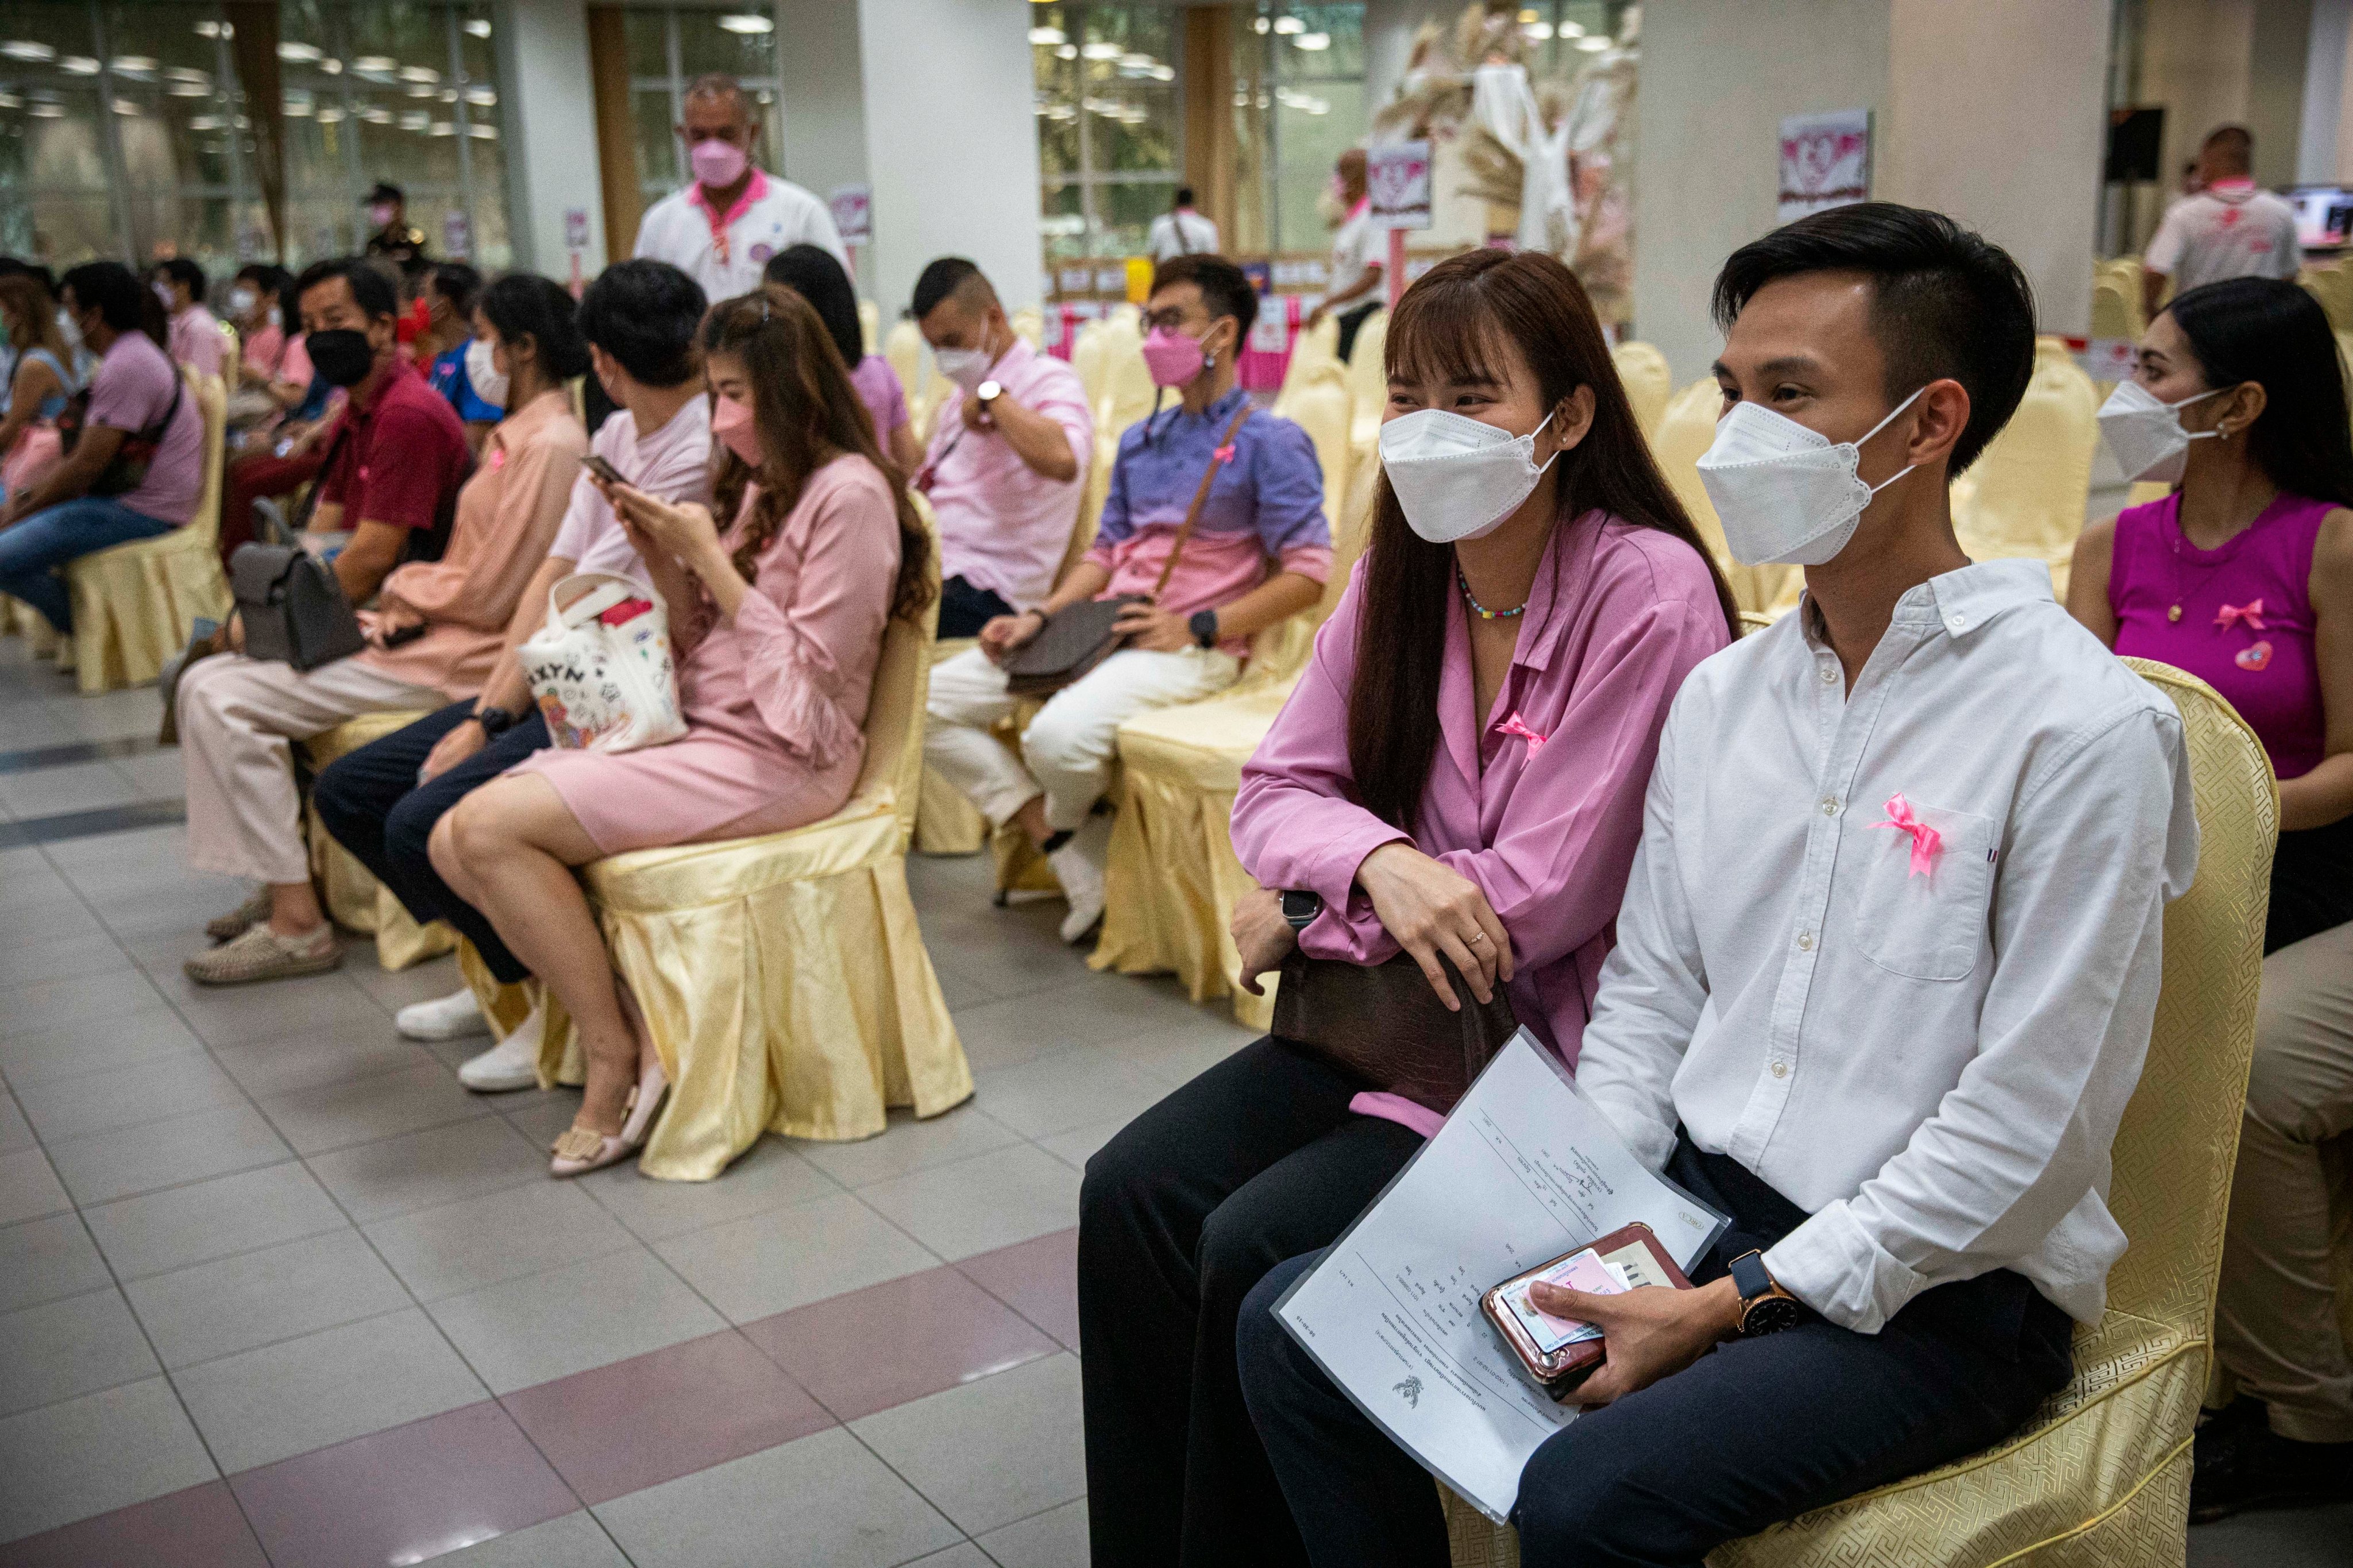 Celebração do Dia de São Valentim, também conhecido como Dia dos Namorados, em Banguecoque, na Tailândia, onde casais contraem matrimónio neste dia